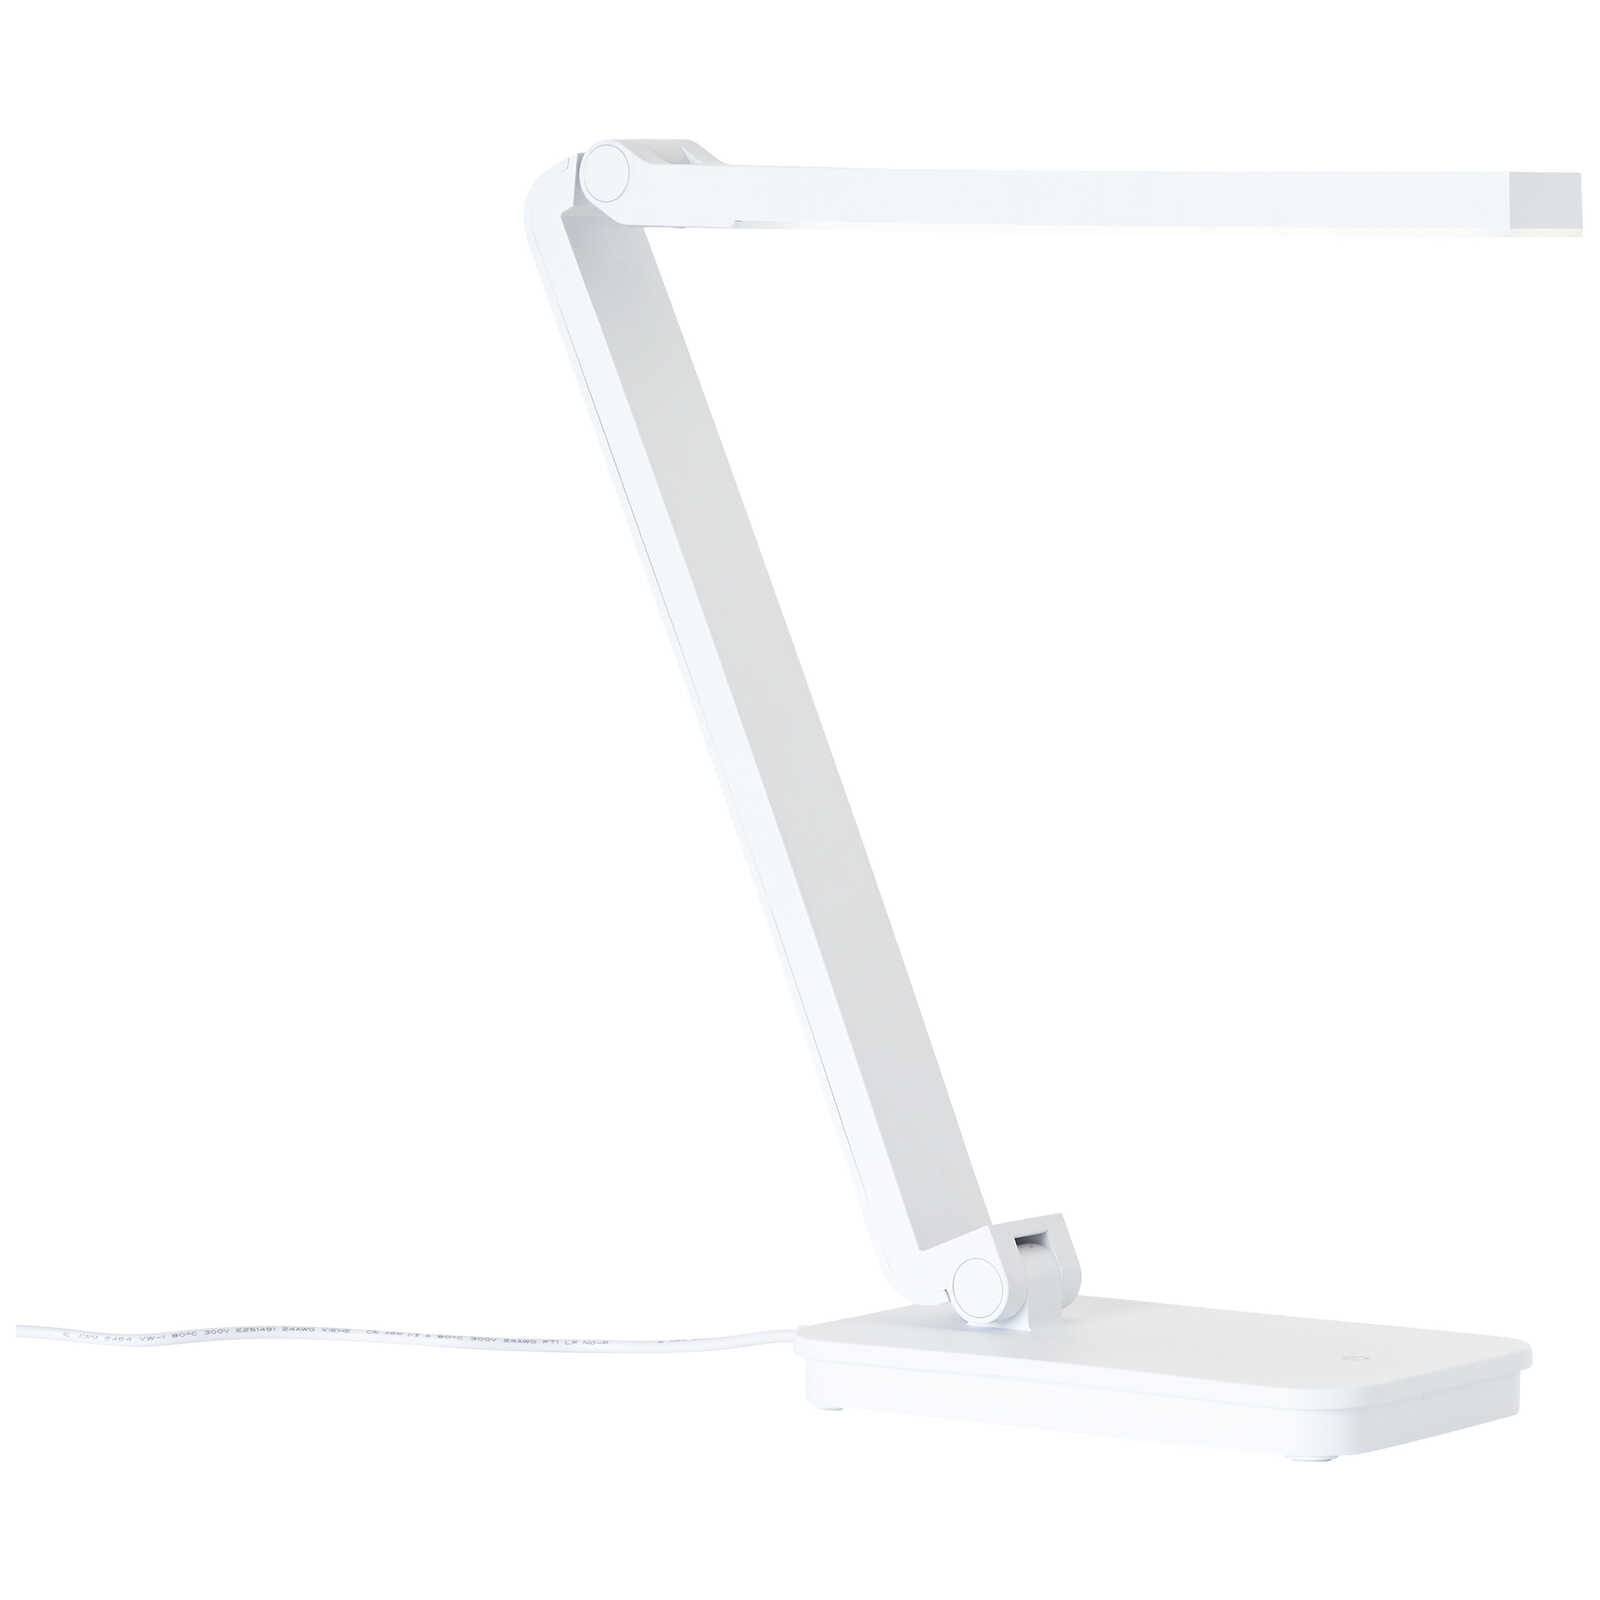             Plastic table lamp - Romy 1 - White
        